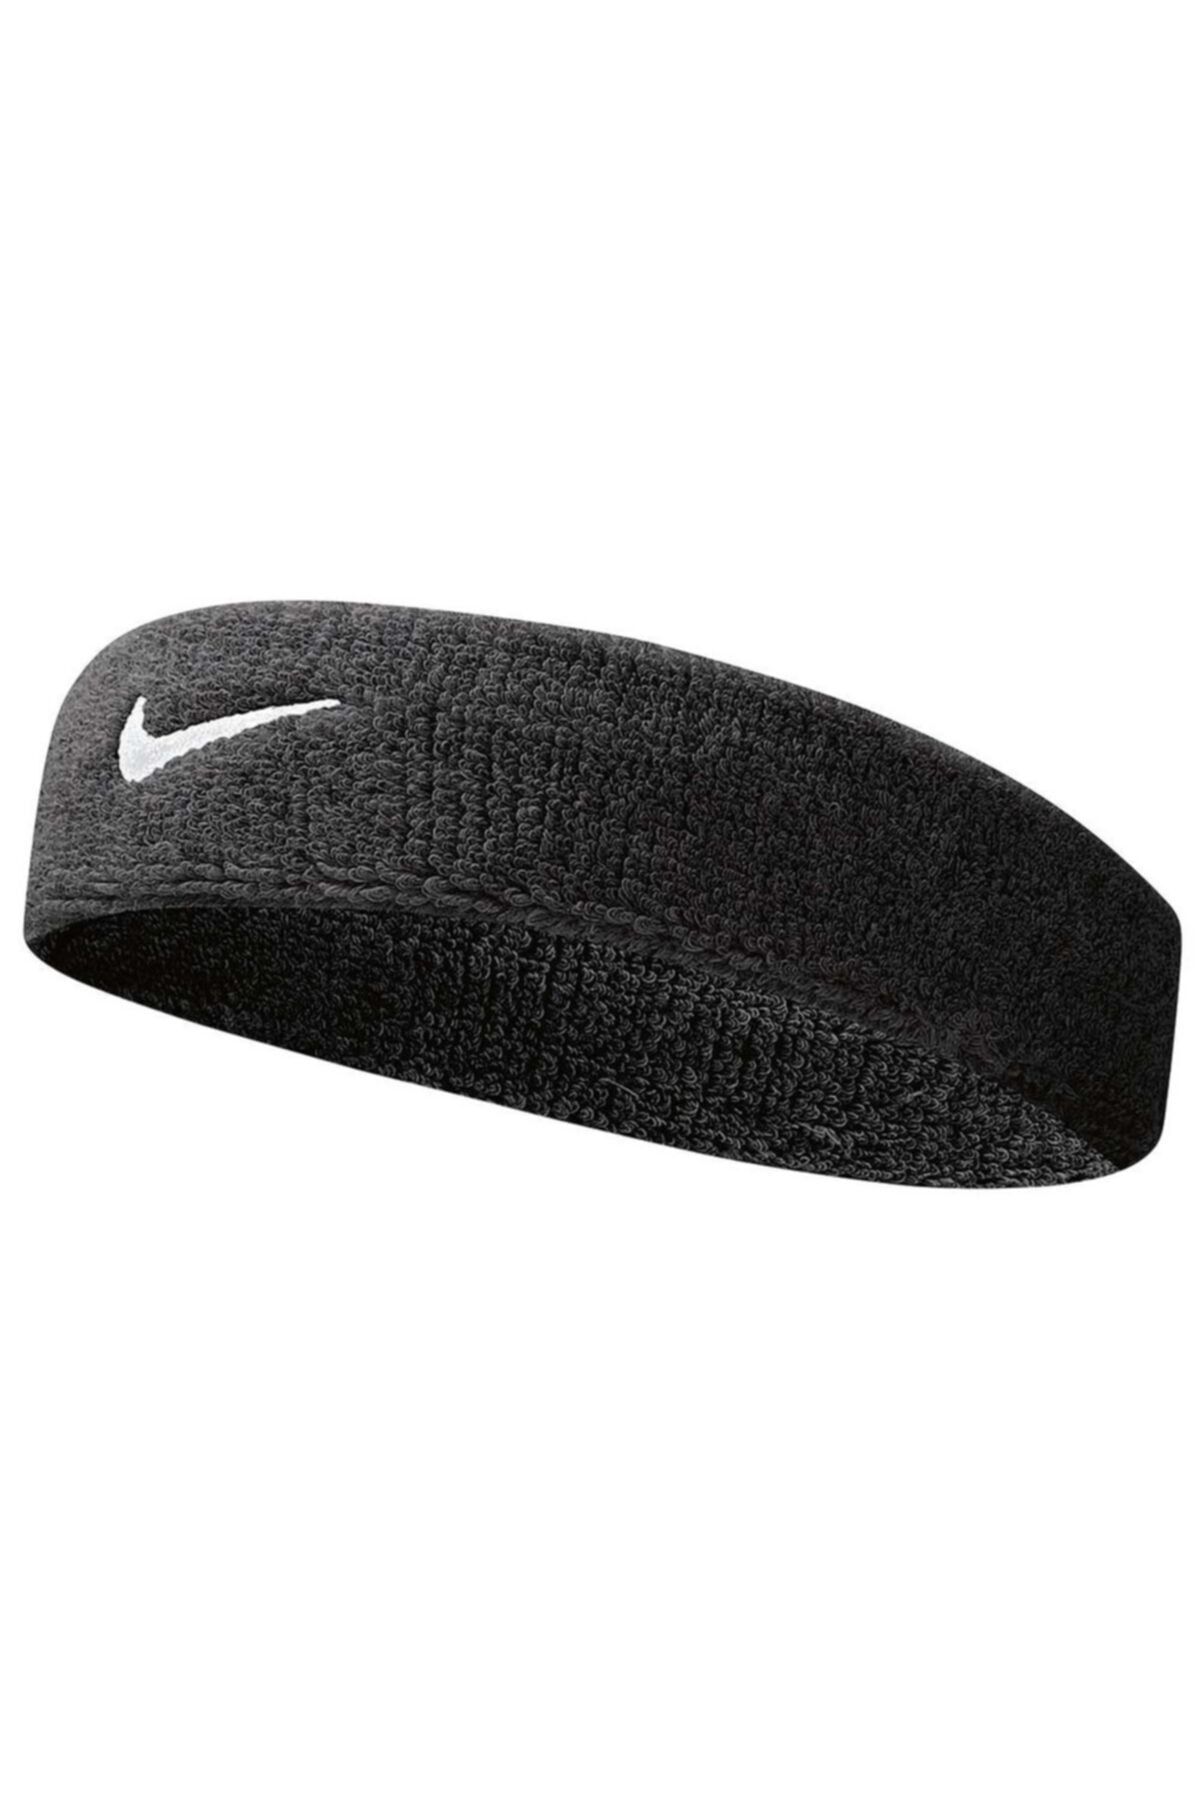 Nike Swoosh Headband Havlu Saç Bandı Nnn27010